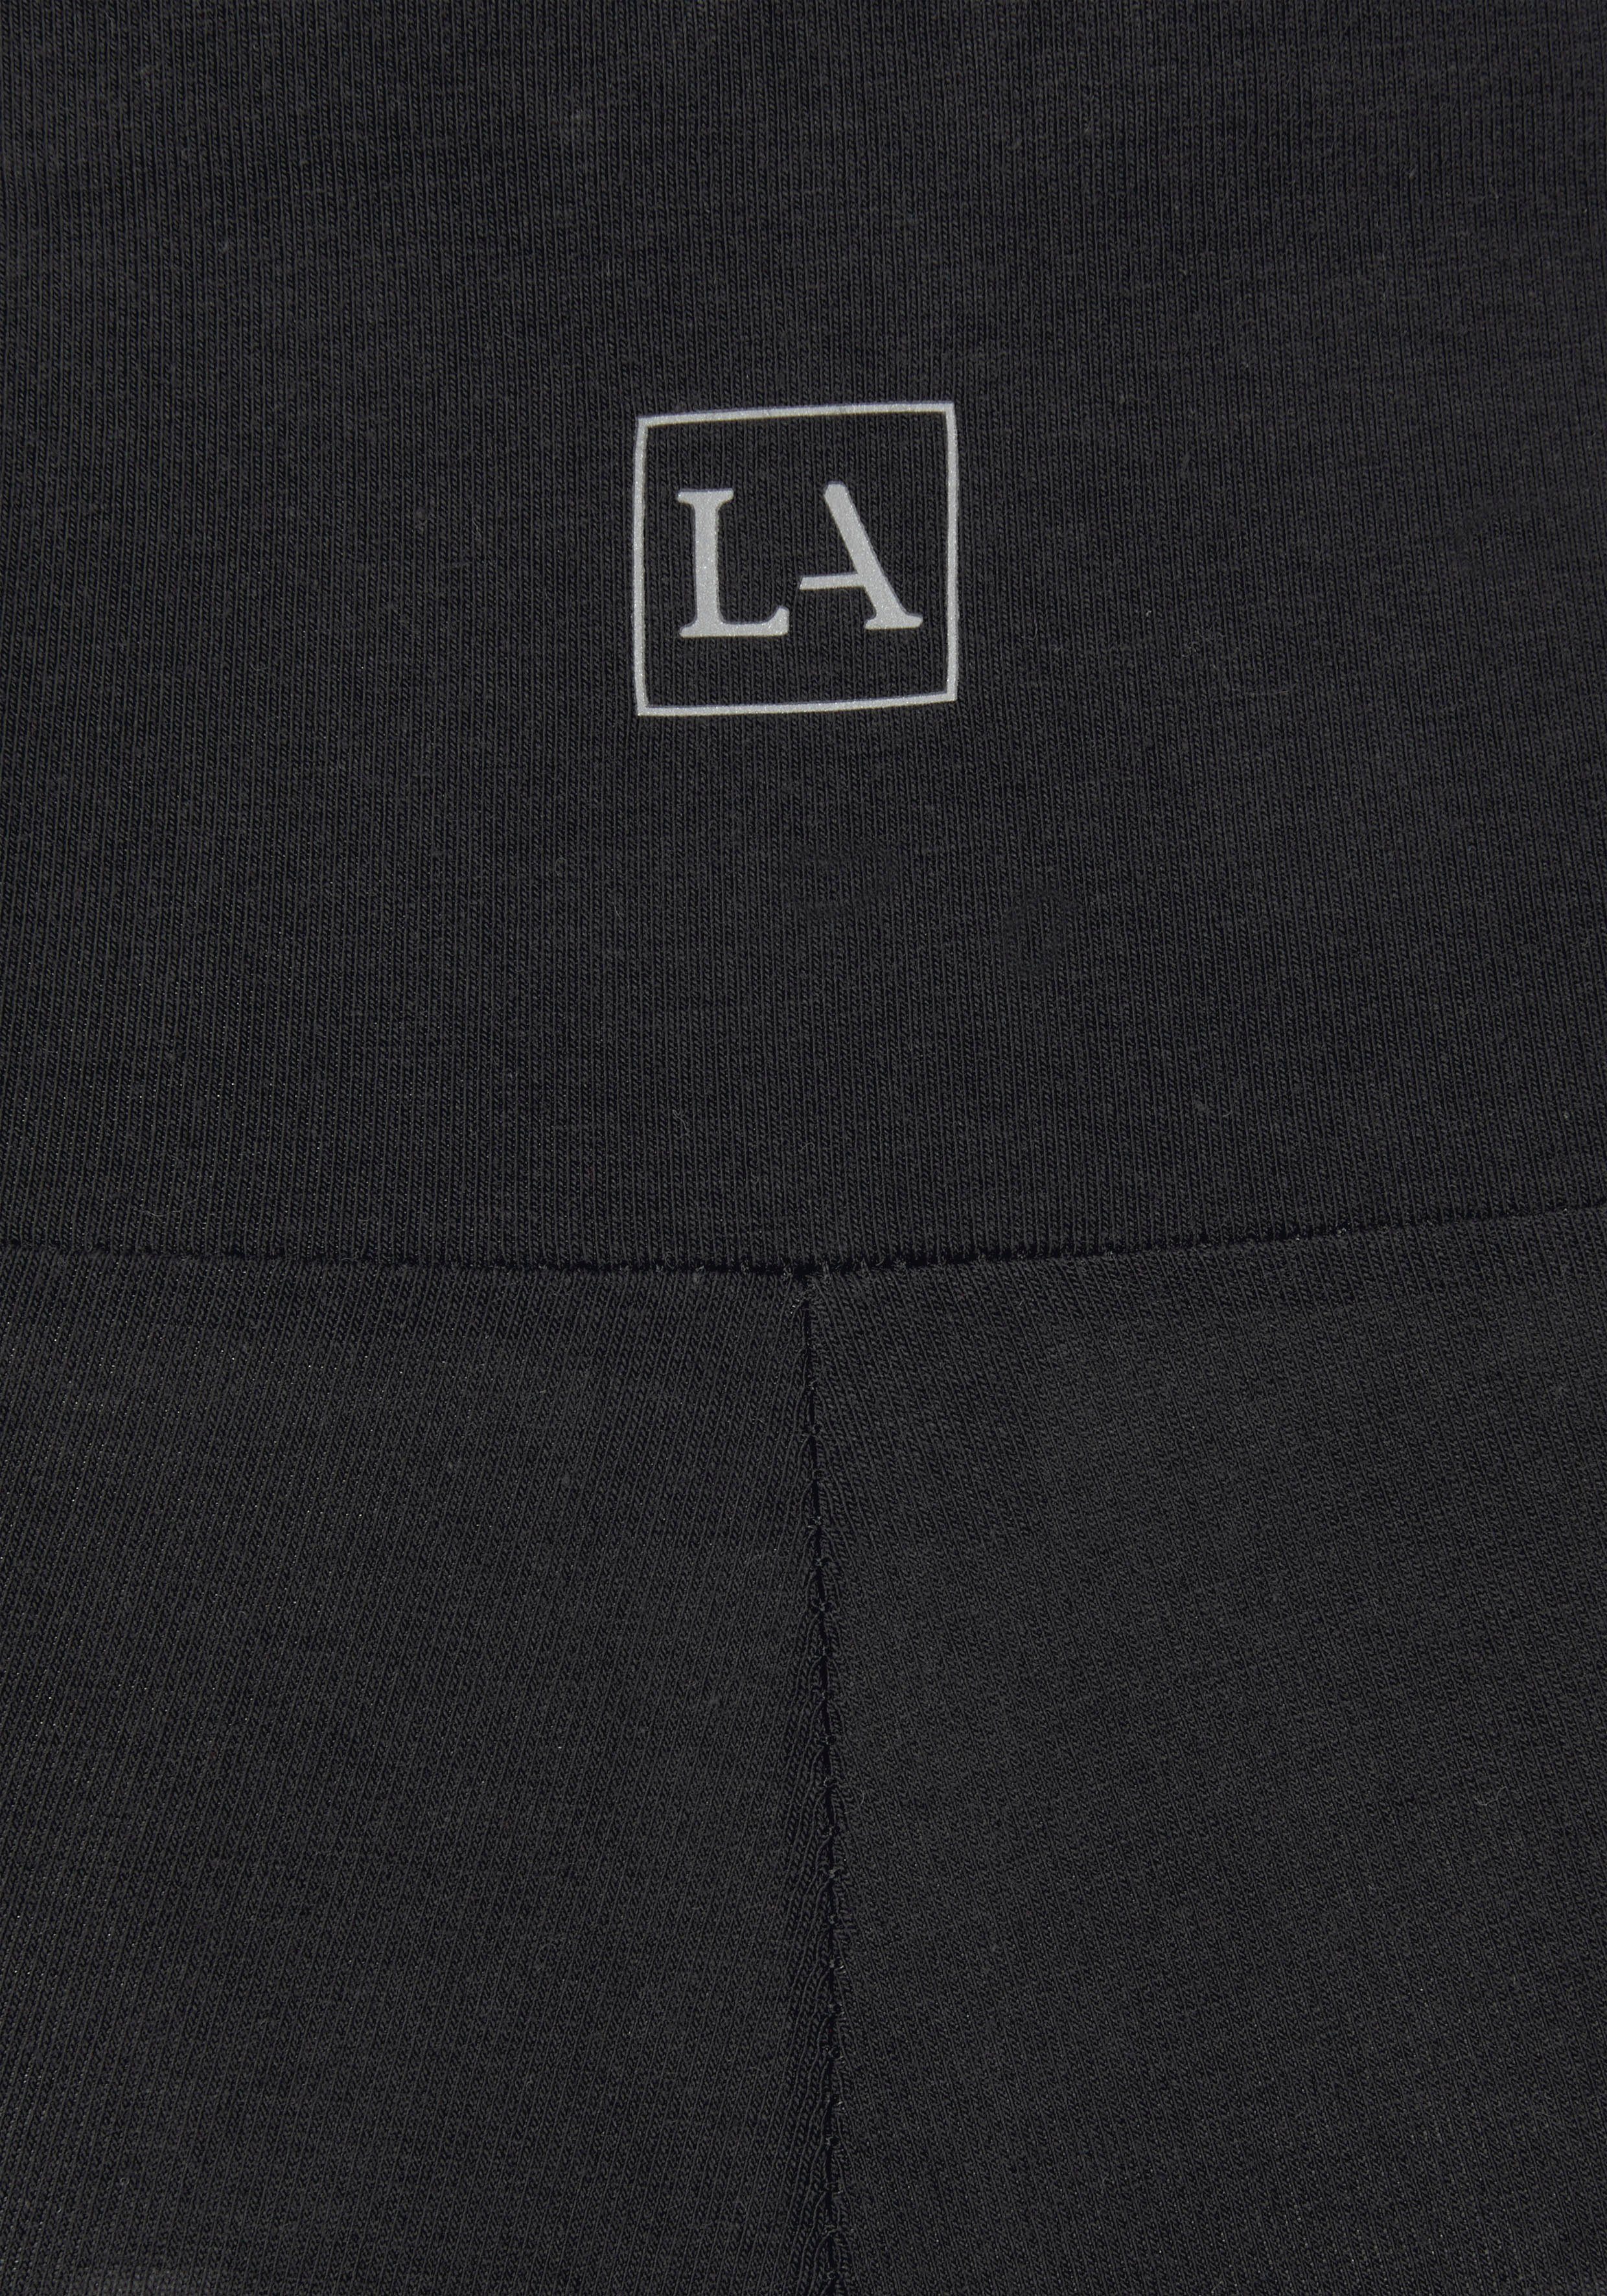 und Shorts schwarz LASCANA mit breitem Bündchen Loungewear Logodruck,